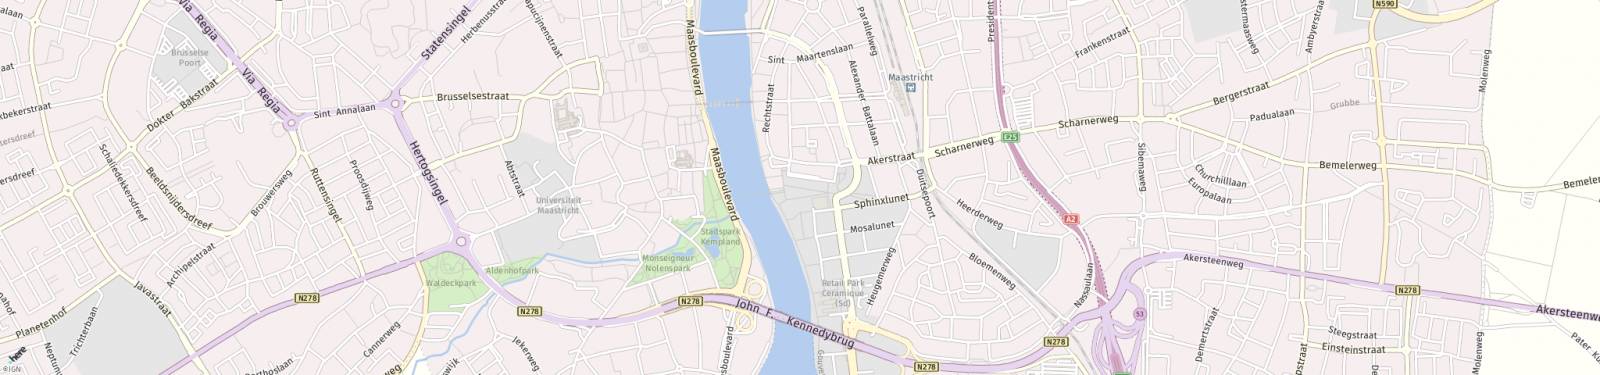 Kaart met locatie Appartement Plein 1992